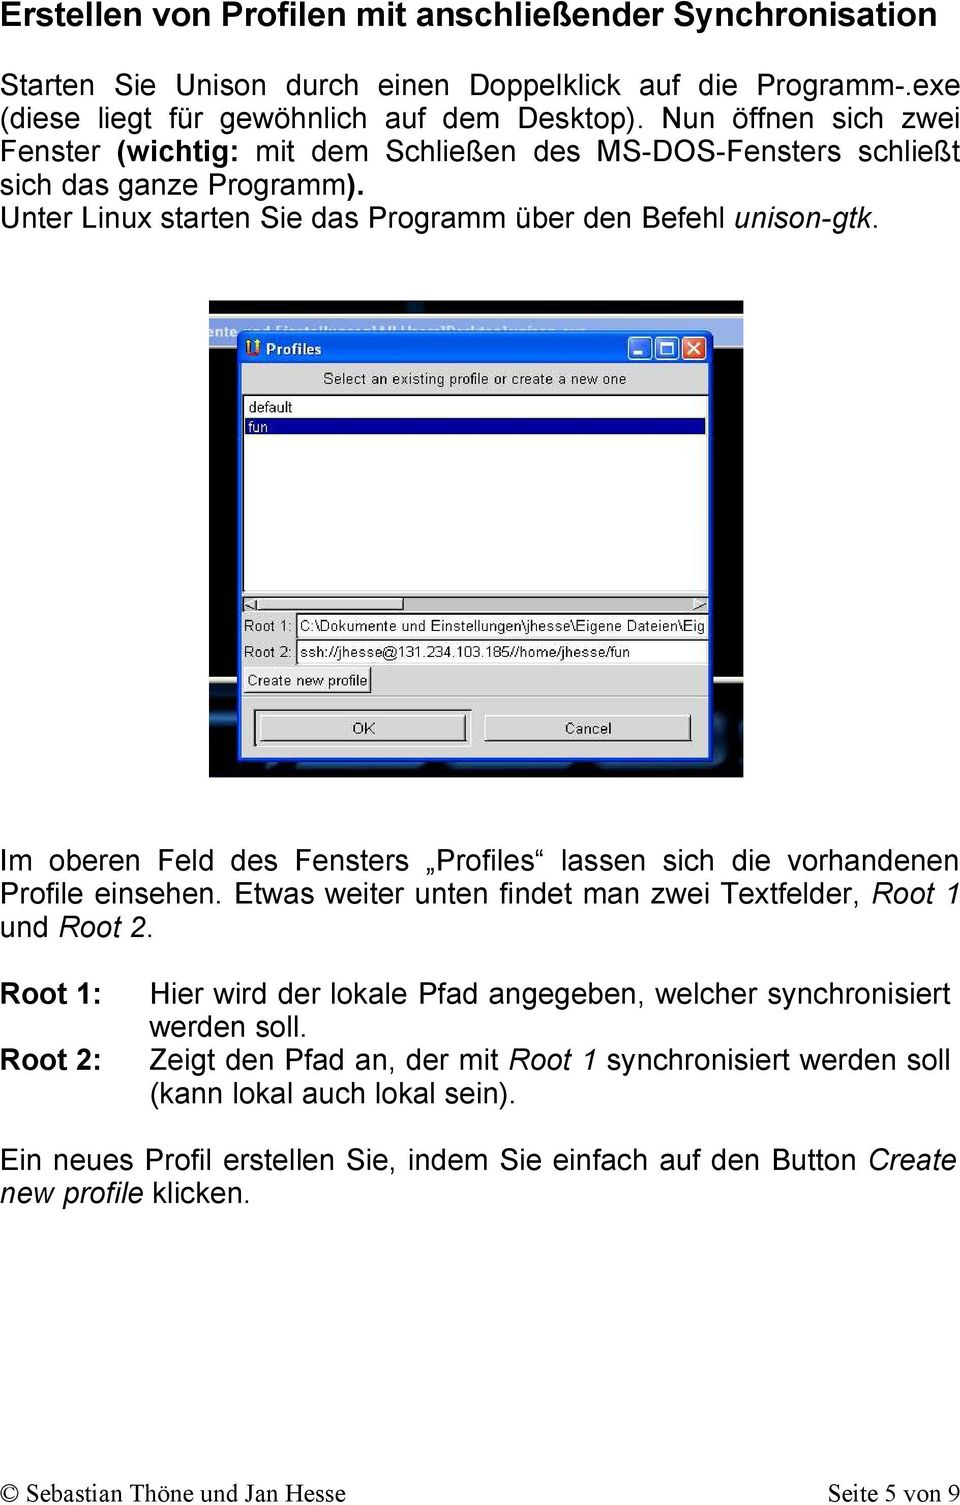 Im oberen Feld des Fensters Profiles lassen sich die vorhandenen Profile einsehen. Etwas weiter unten findet man zwei Textfelder, Root 1 und Root 2.